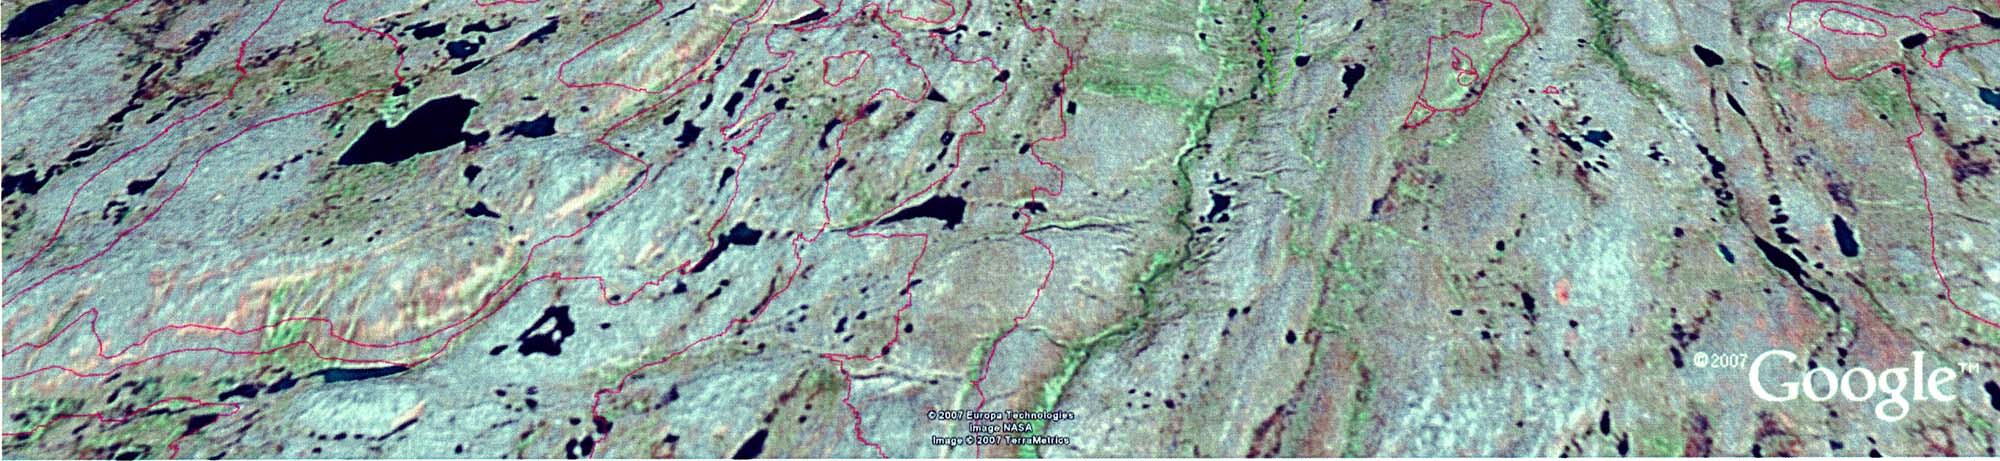 Liite 5c. Pulmankijärven tutkimusalue kolmiulotteisena näkymänä. Liite 5c. Pulmankijärven tutkimusalue kolmiulotteisena näkymänä. Pulmankijärven vedenpinta on vain 14 m merenpinnan yläpuolella.